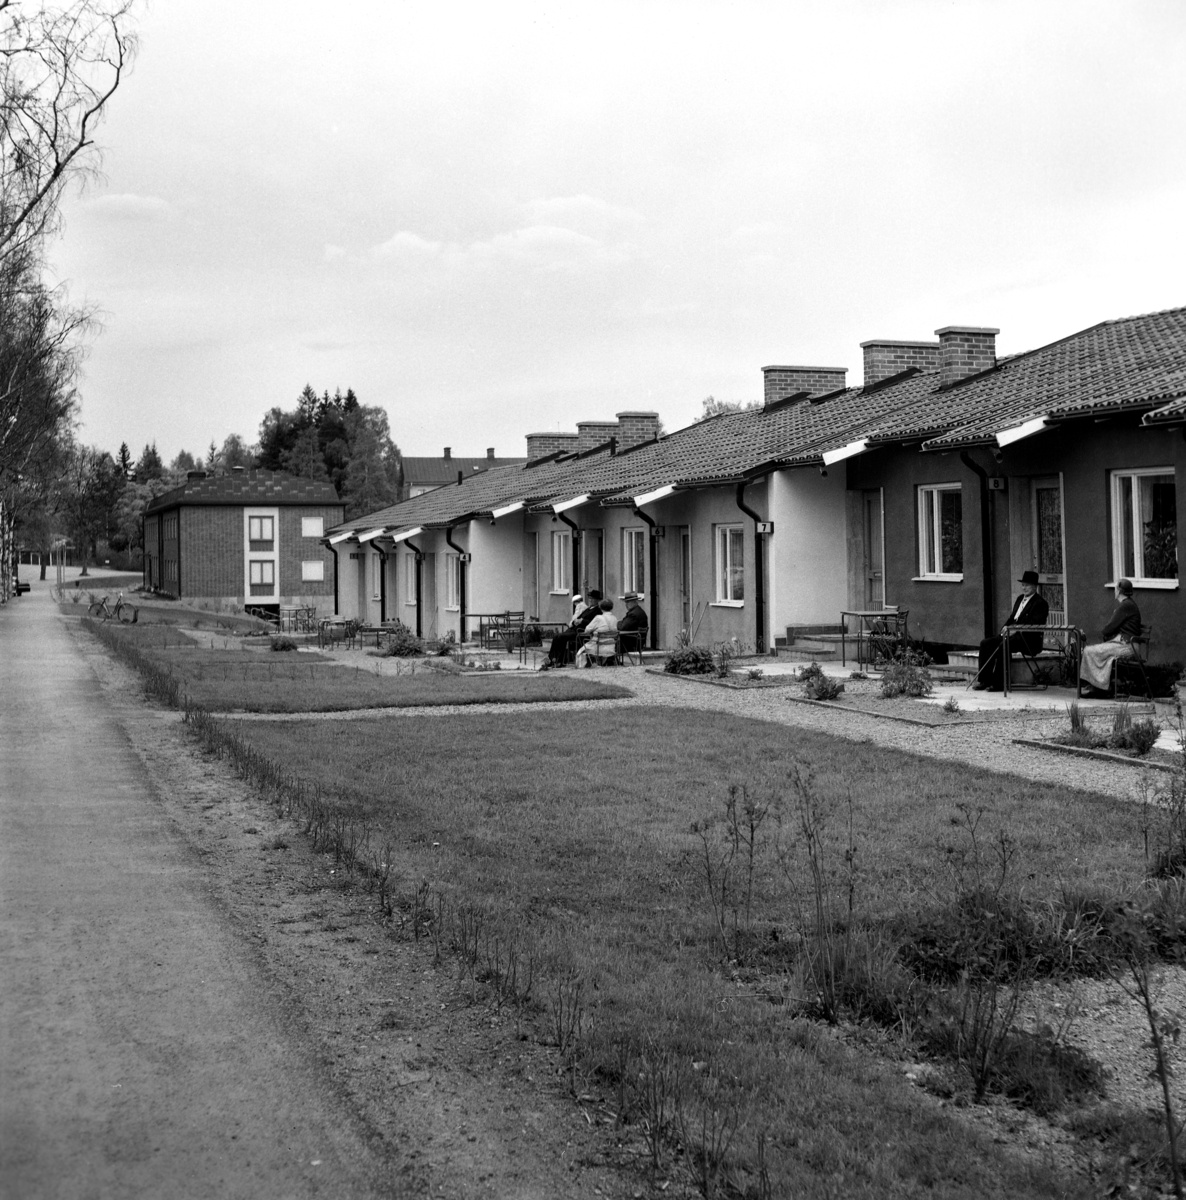 Någonstans i Värmland - från slutet av 1950-talet. Kommentar från användare: "Radhusen vid Stationsgatan i Molkom. I bakgrunden syns tegelhuset som har inrymt bibliotek, polisstation och bank bl.a".